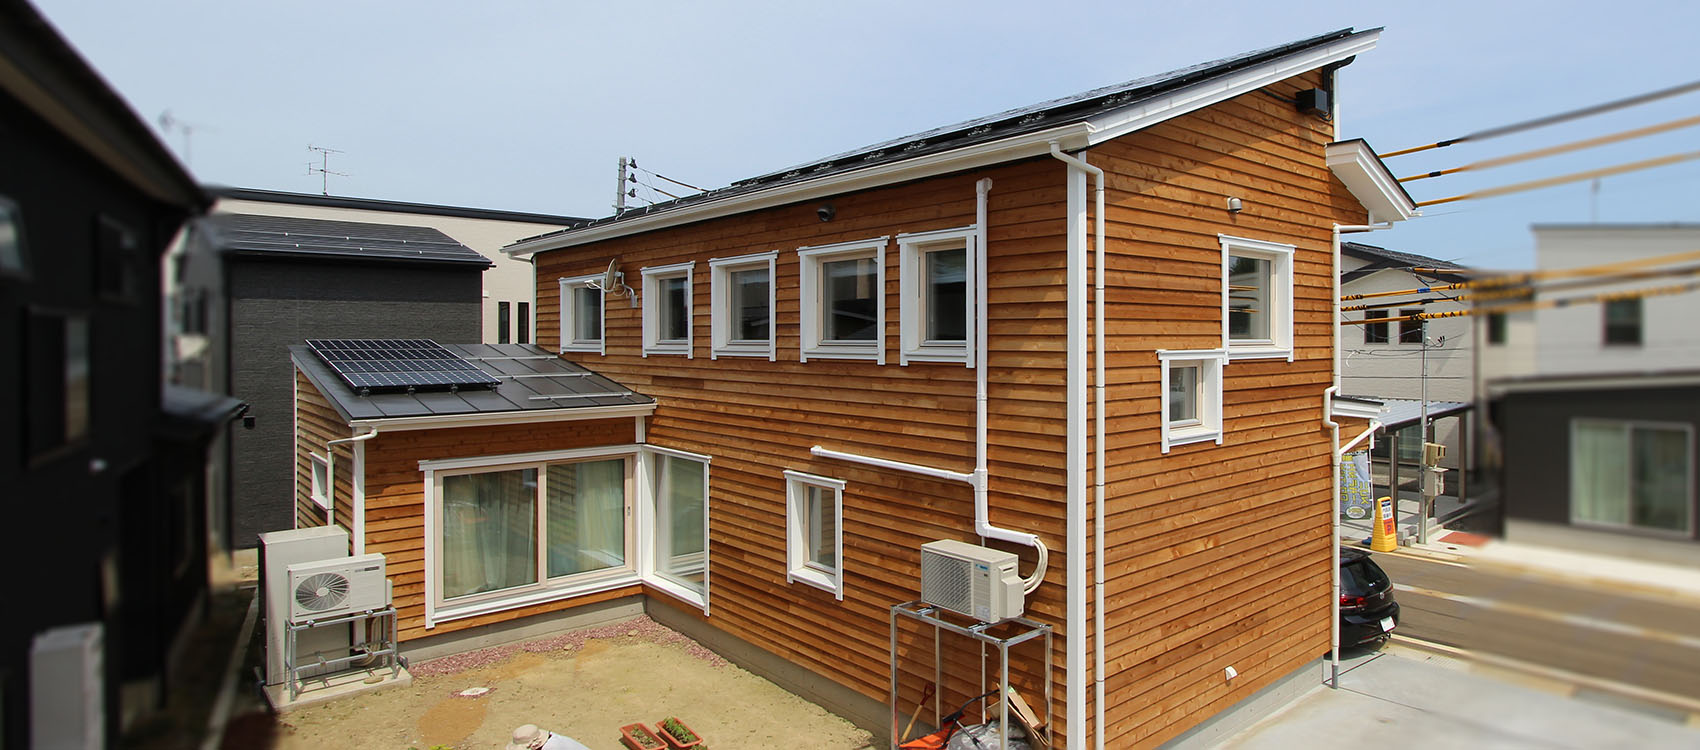 新潟県長岡市の注文住宅・新築・注文住宅・デザイン住宅なら・身体と環境に優しい健康住宅を建てる加藤建築。全棟小さなエアコン1台の冷暖房で1年中快適に過ごせる、夢のような家づくりを実現しています。